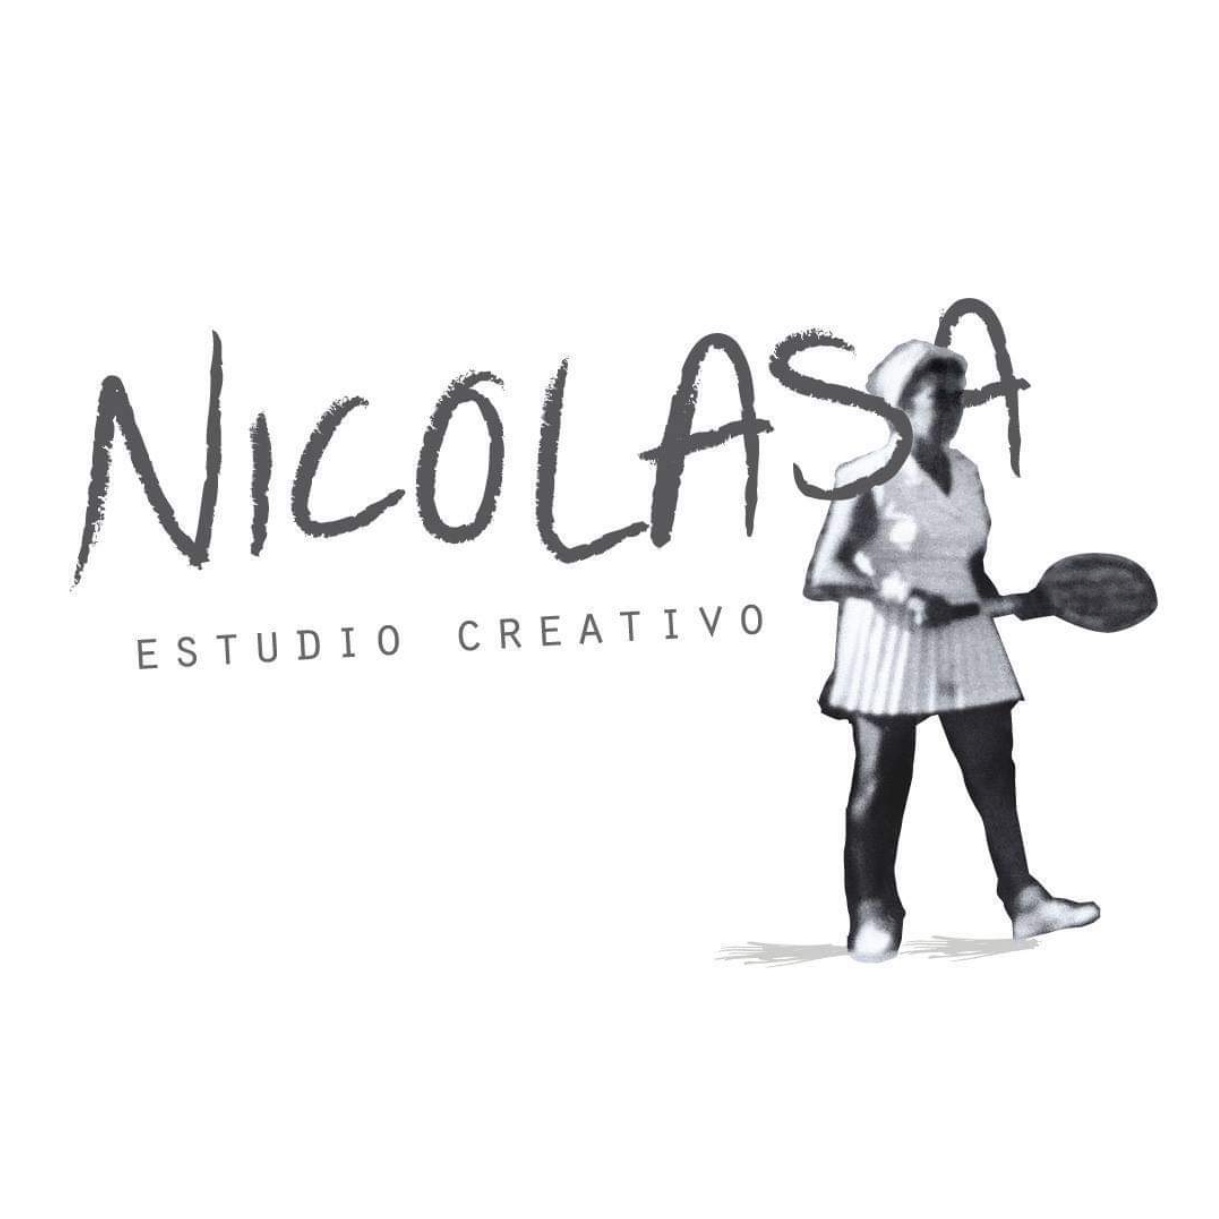 Nicolasa Estudio Creativo - Sisters! La comunidad de mujeres que quieren crecer